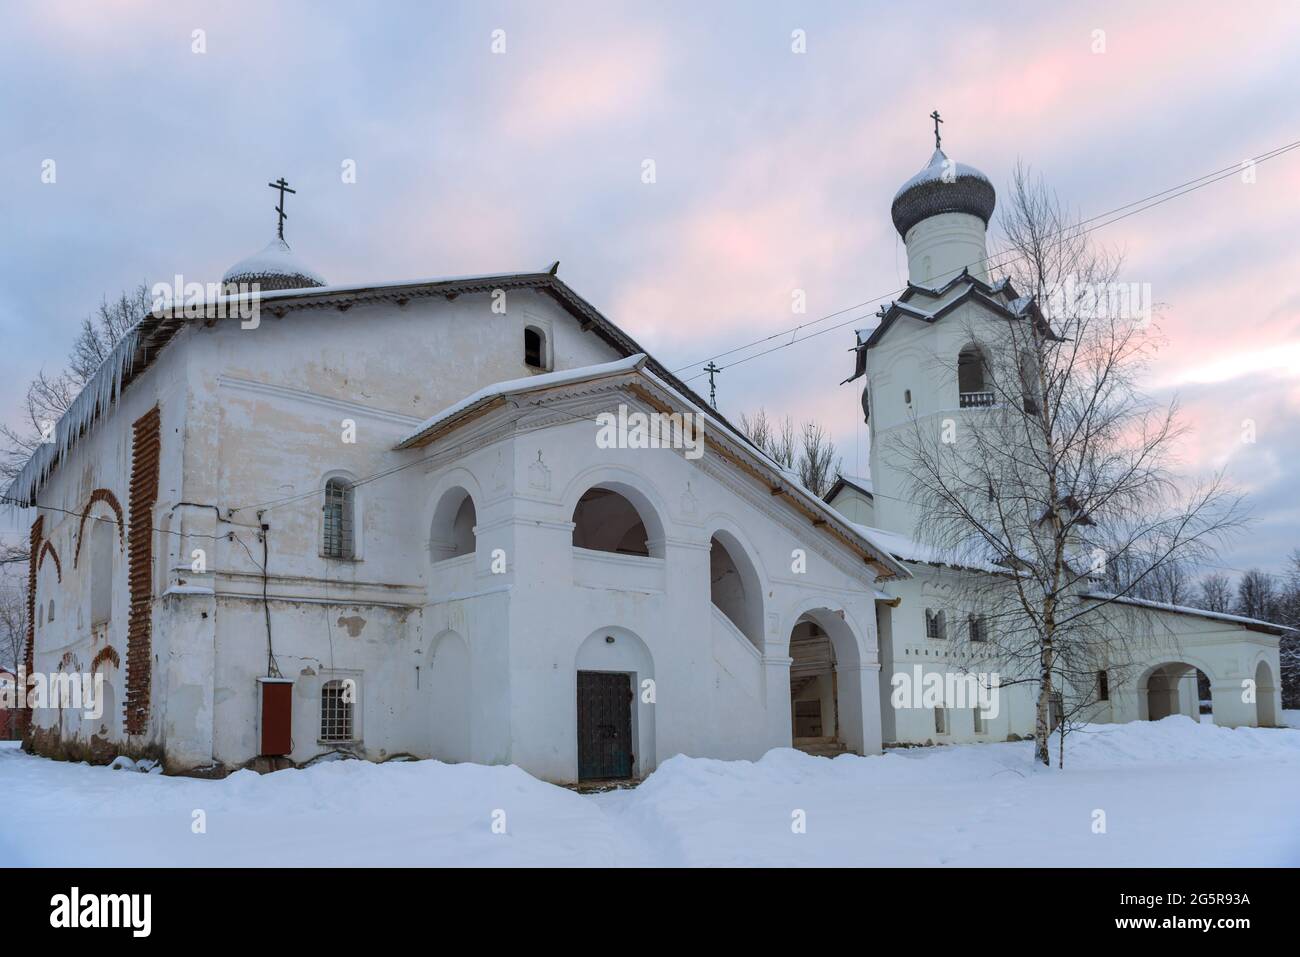 Dans les anciennes églises du monastère de la Transfiguration, le soir de janvier. Staraya Russa, Russie Banque D'Images